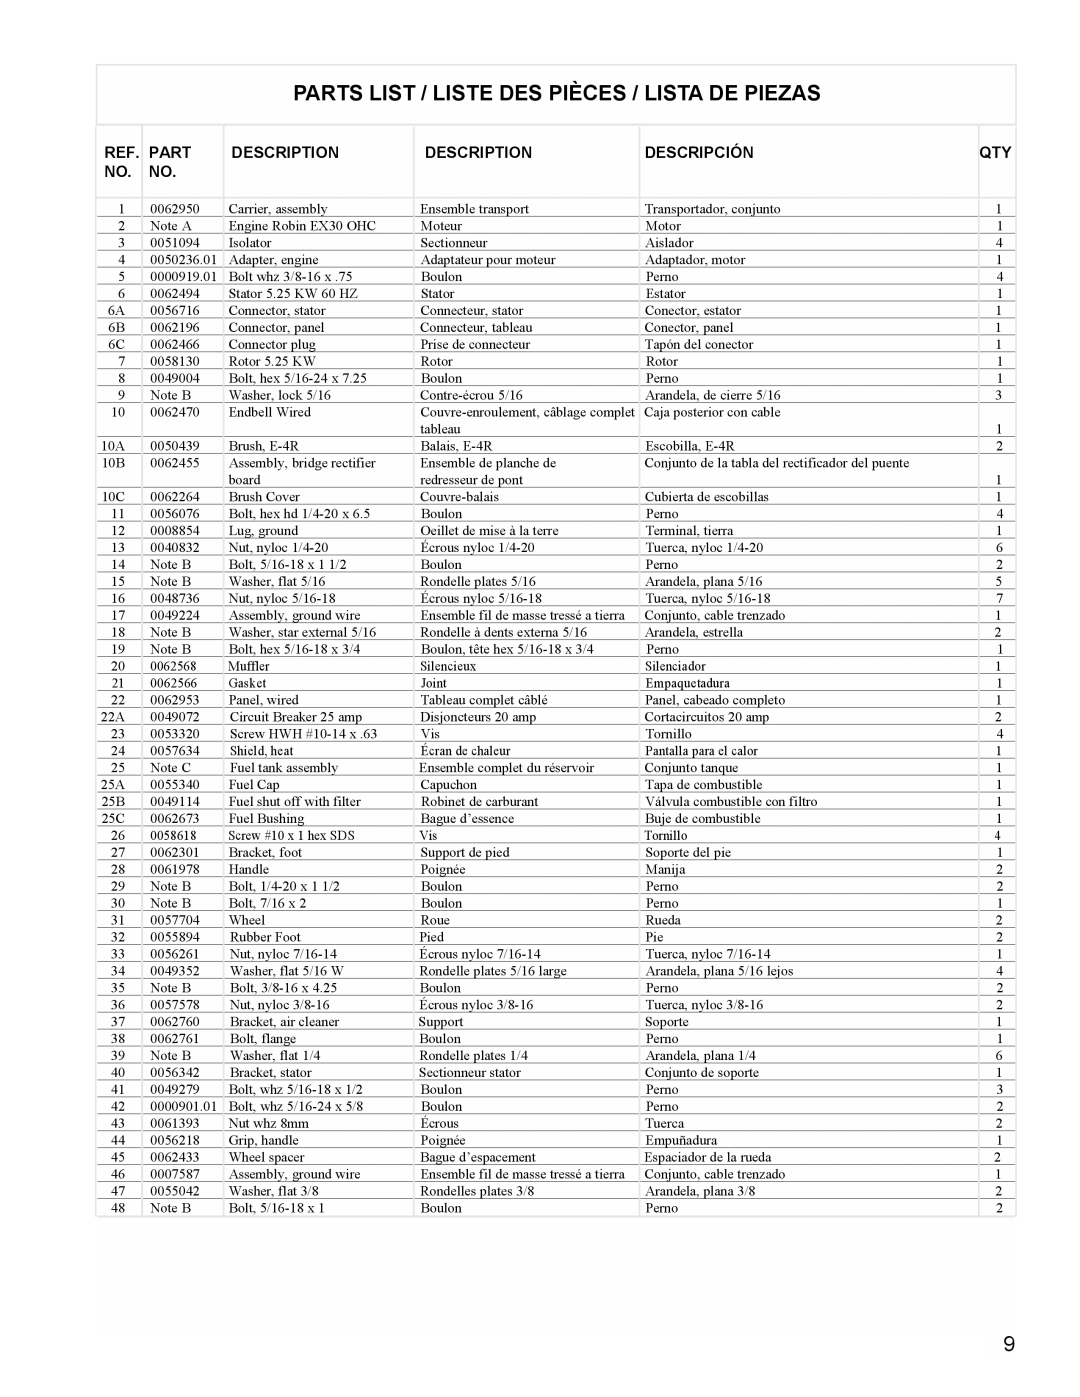 Powermate PM0435250 manual Parts List / Liste Des Pièces / Lista De Piezas, Description, Descripción 